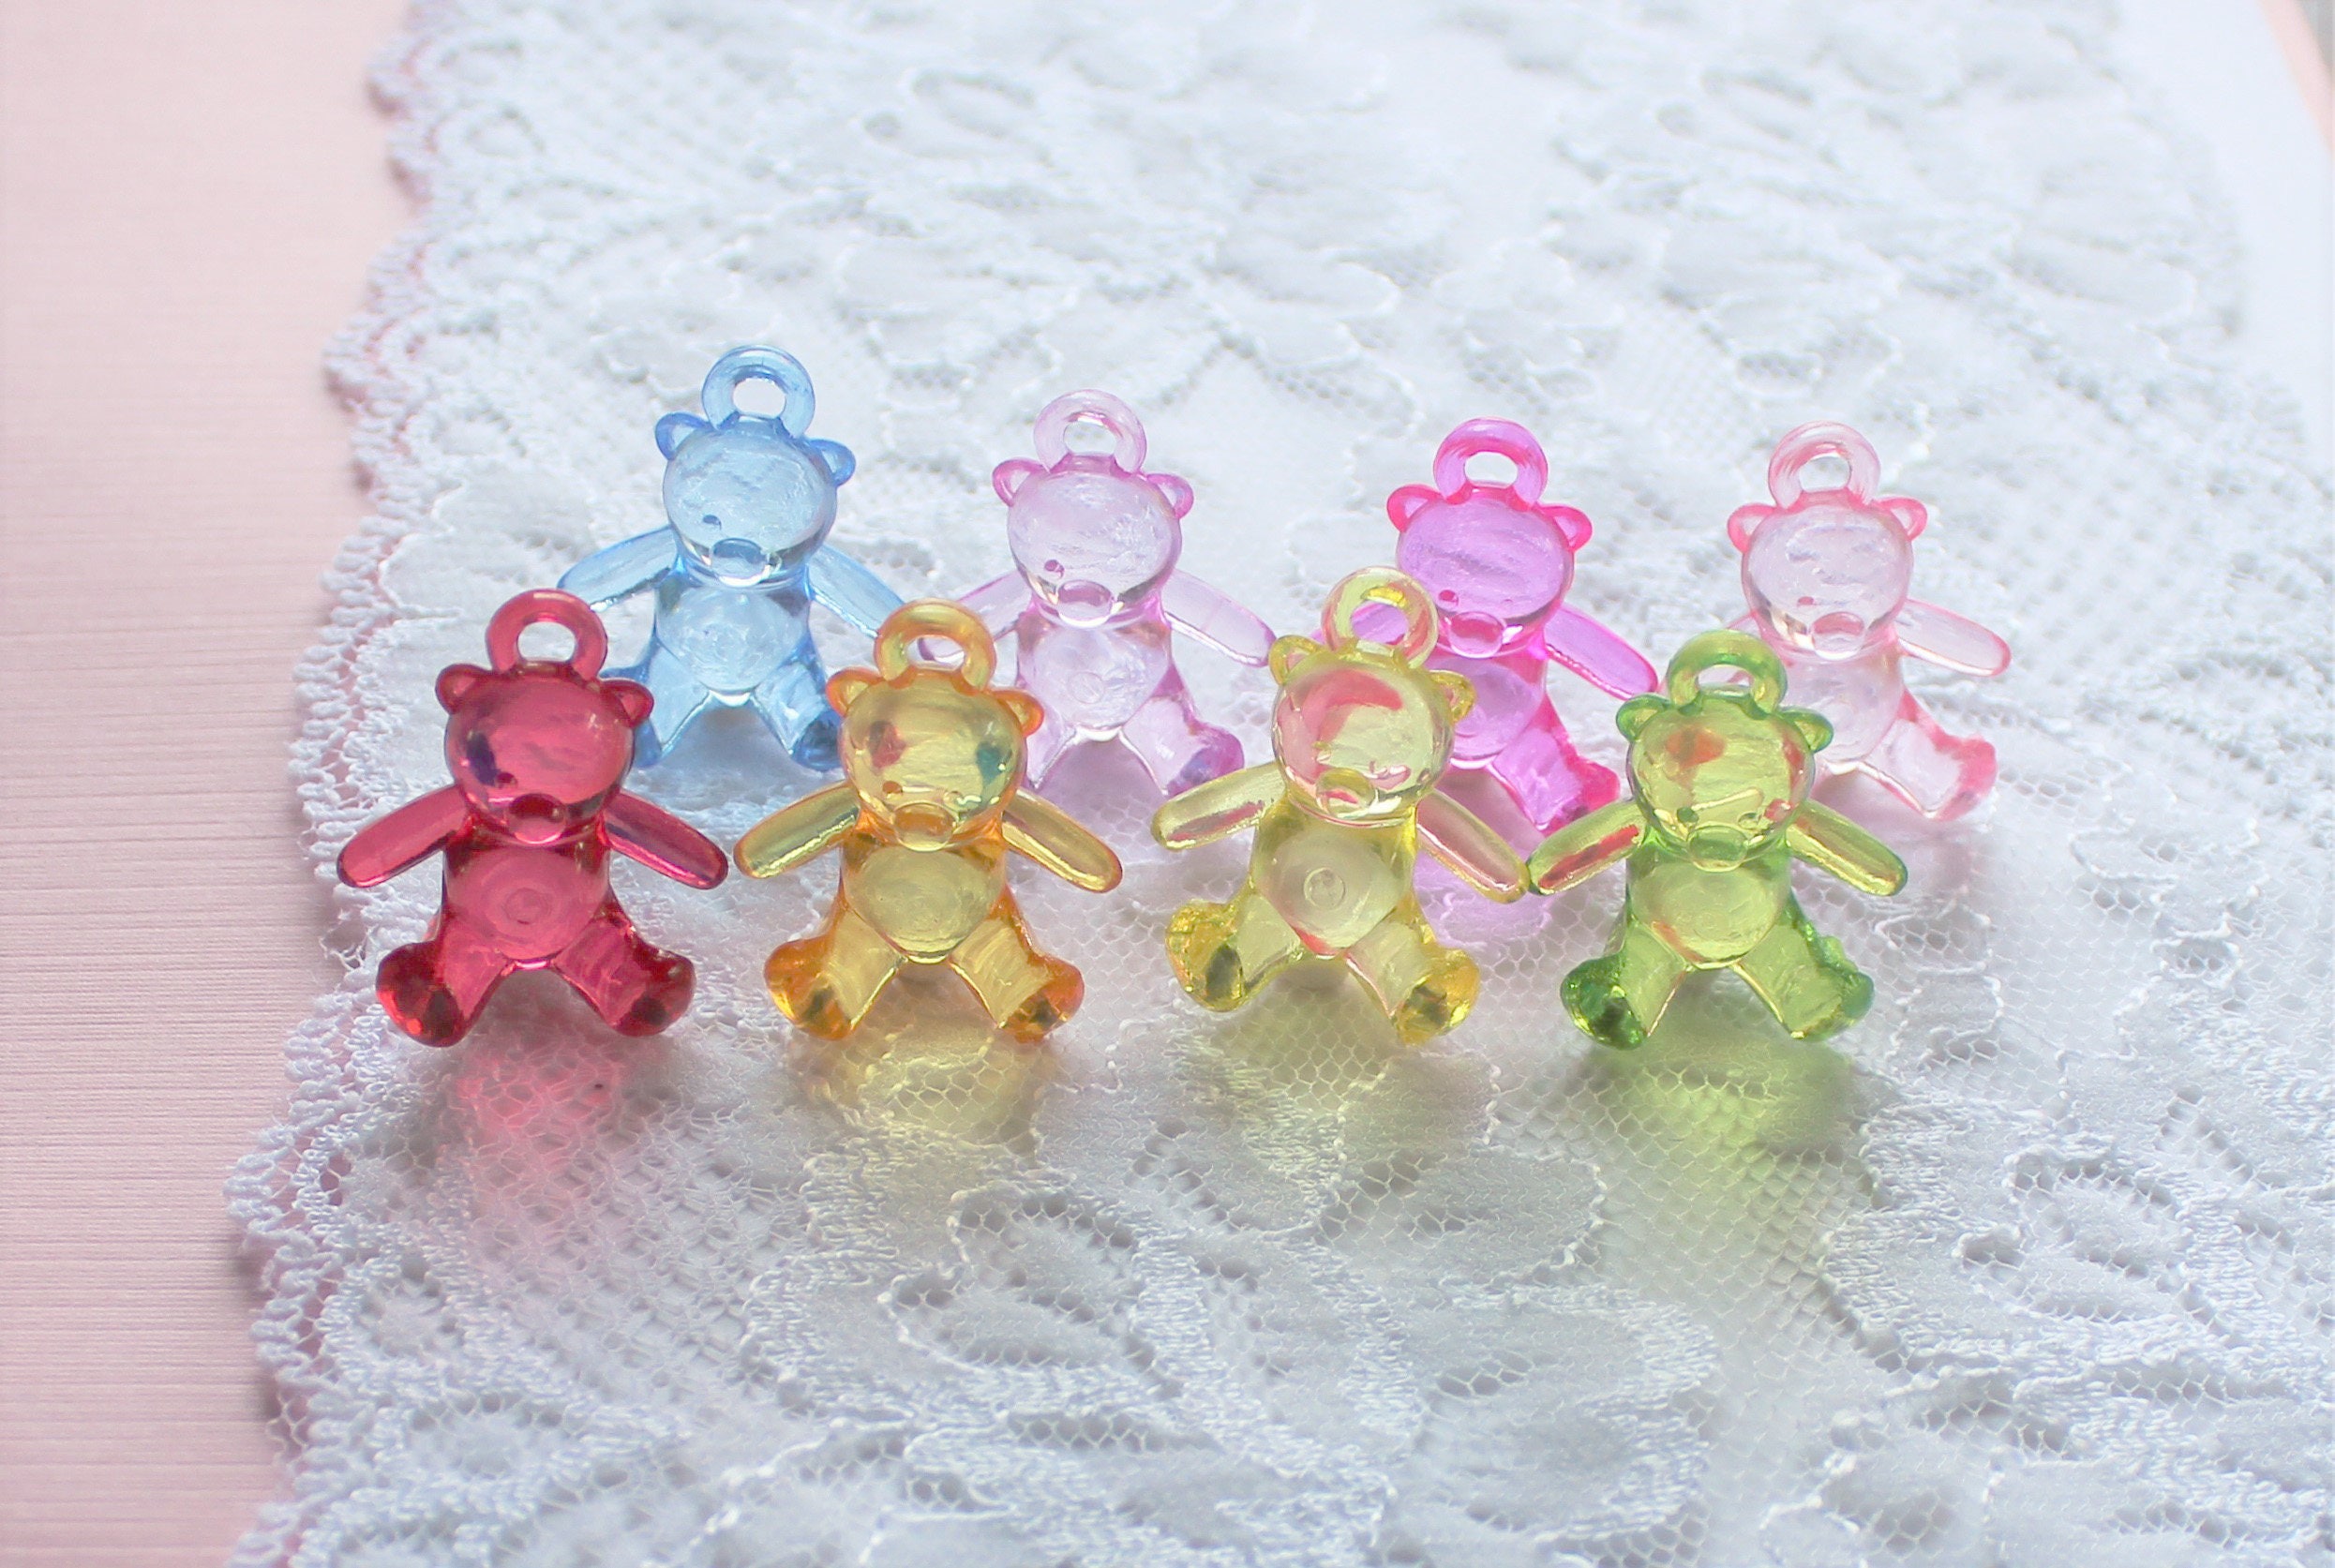 [16PCS] Gummy Bear Set